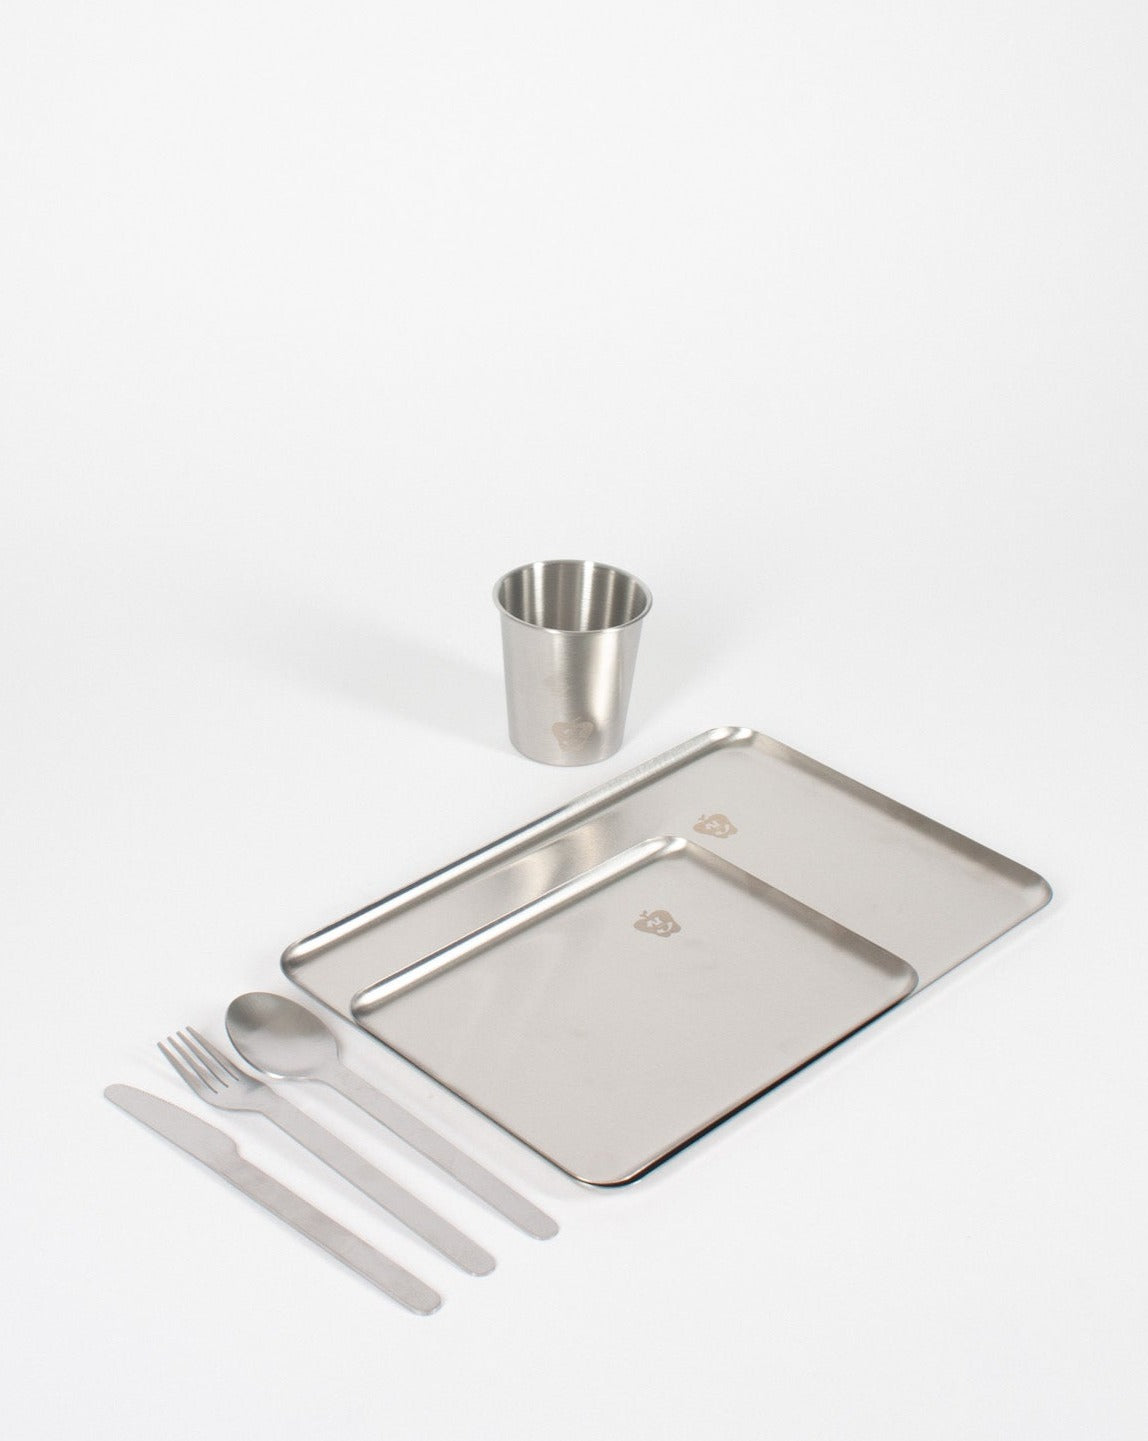 Steel Cutlery - Pick Up - 12 pcs